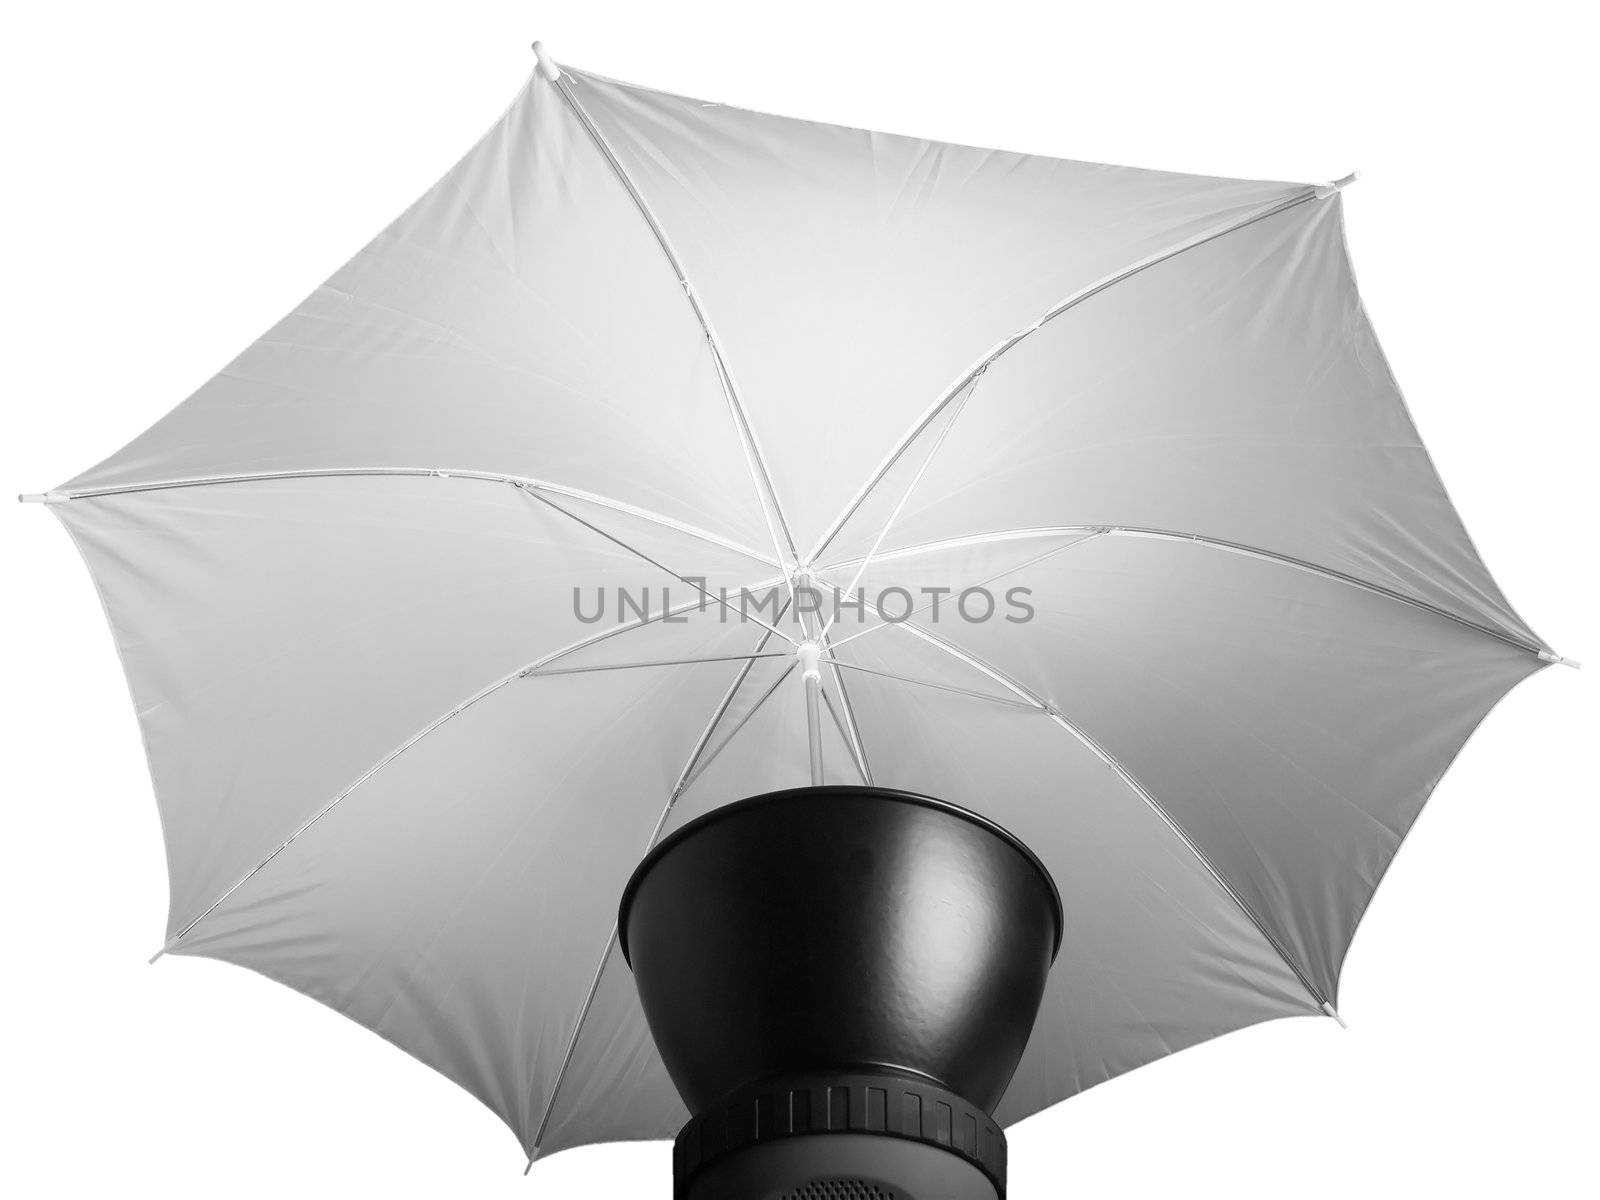 Lighting umbrella by claudiodivizia